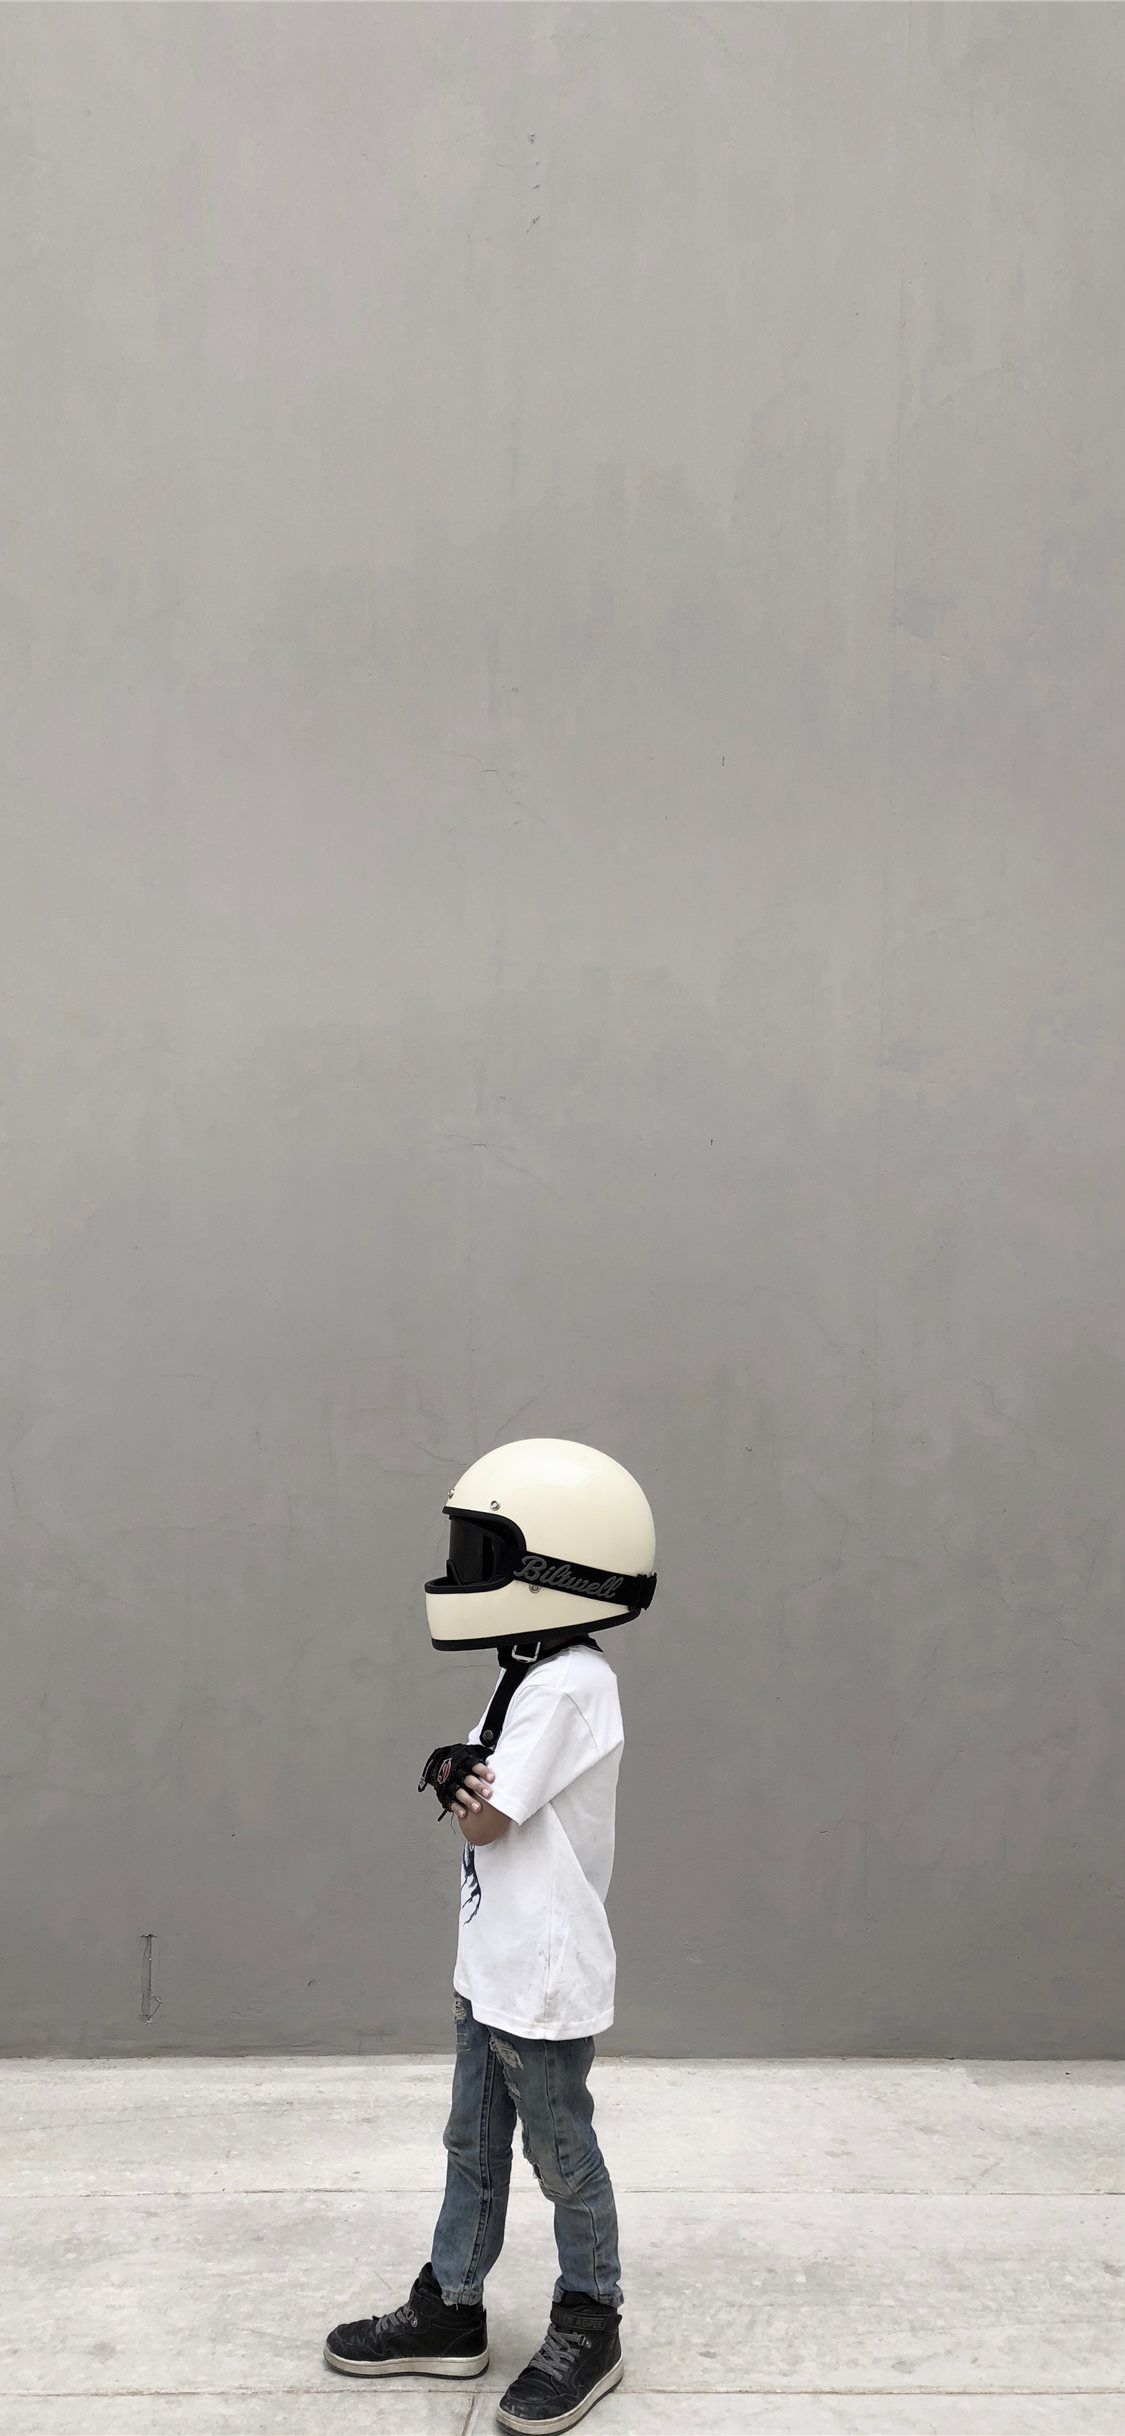 Helmet Boy iPhone X Wallpaper Free Download